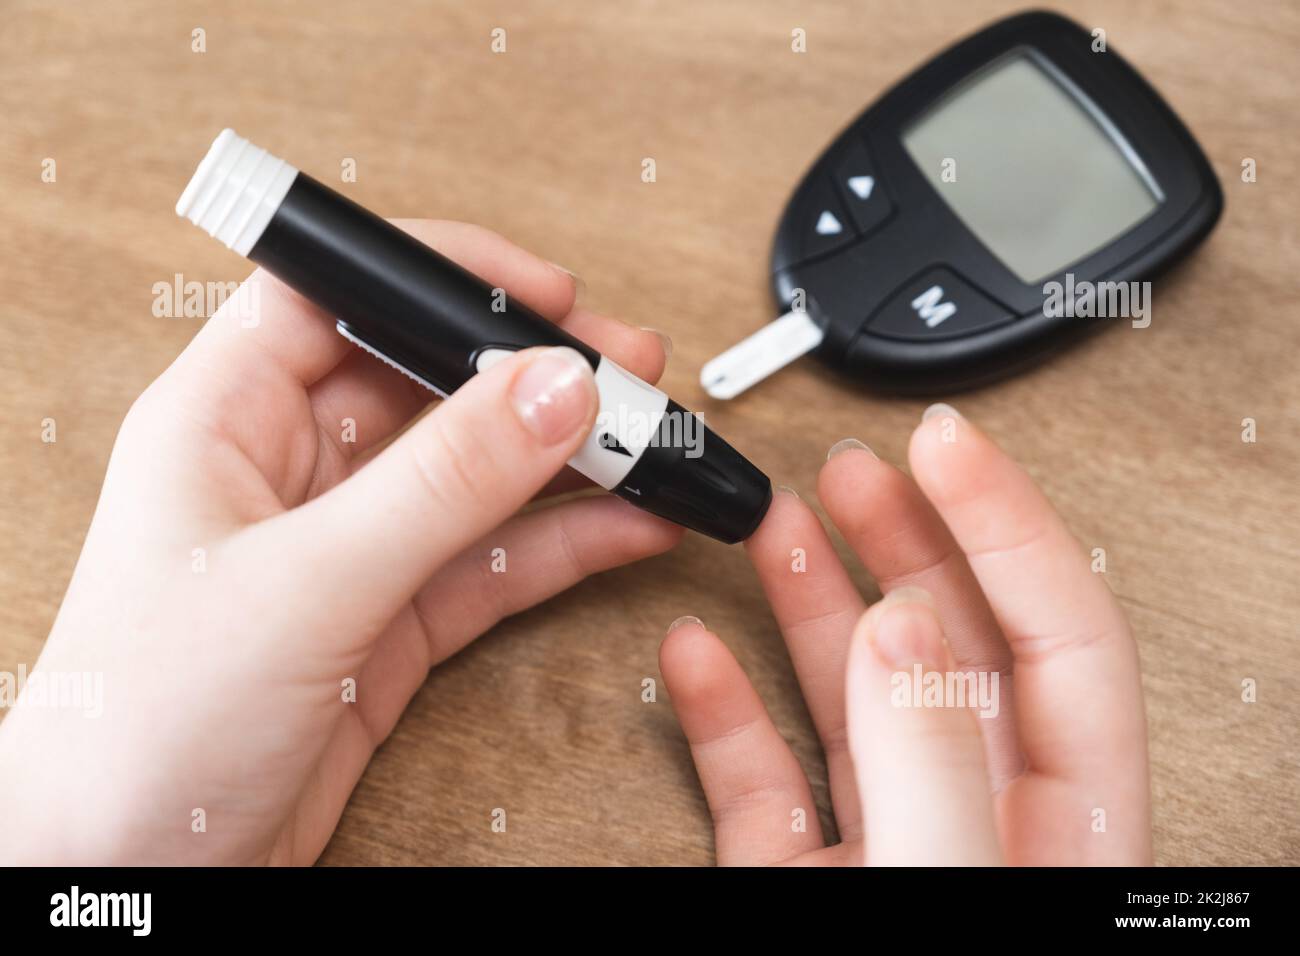 Le mani del bambino che usano Lancet sul dito per controllare il livello di zucchero nel sangue con il glucometro. Foto Stock